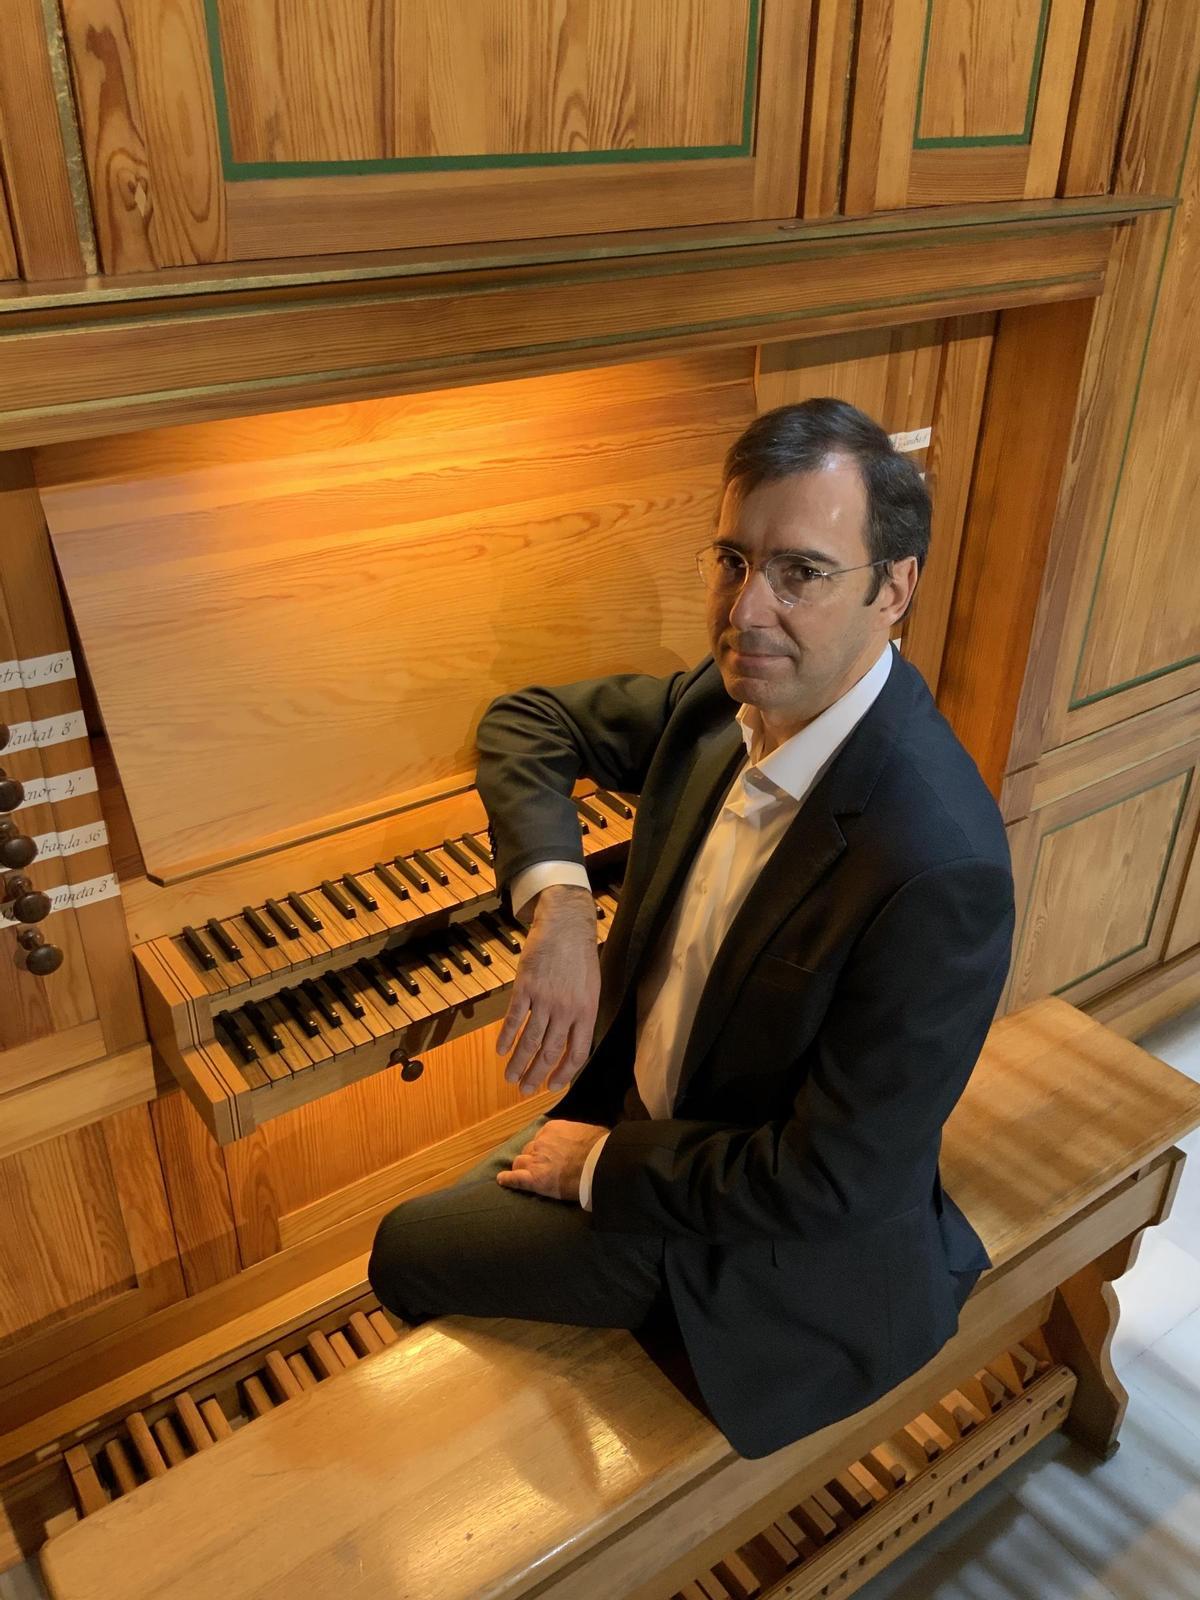 Josep Vicent Giner es organista y clavecinista con una importante trayectoria internacional.